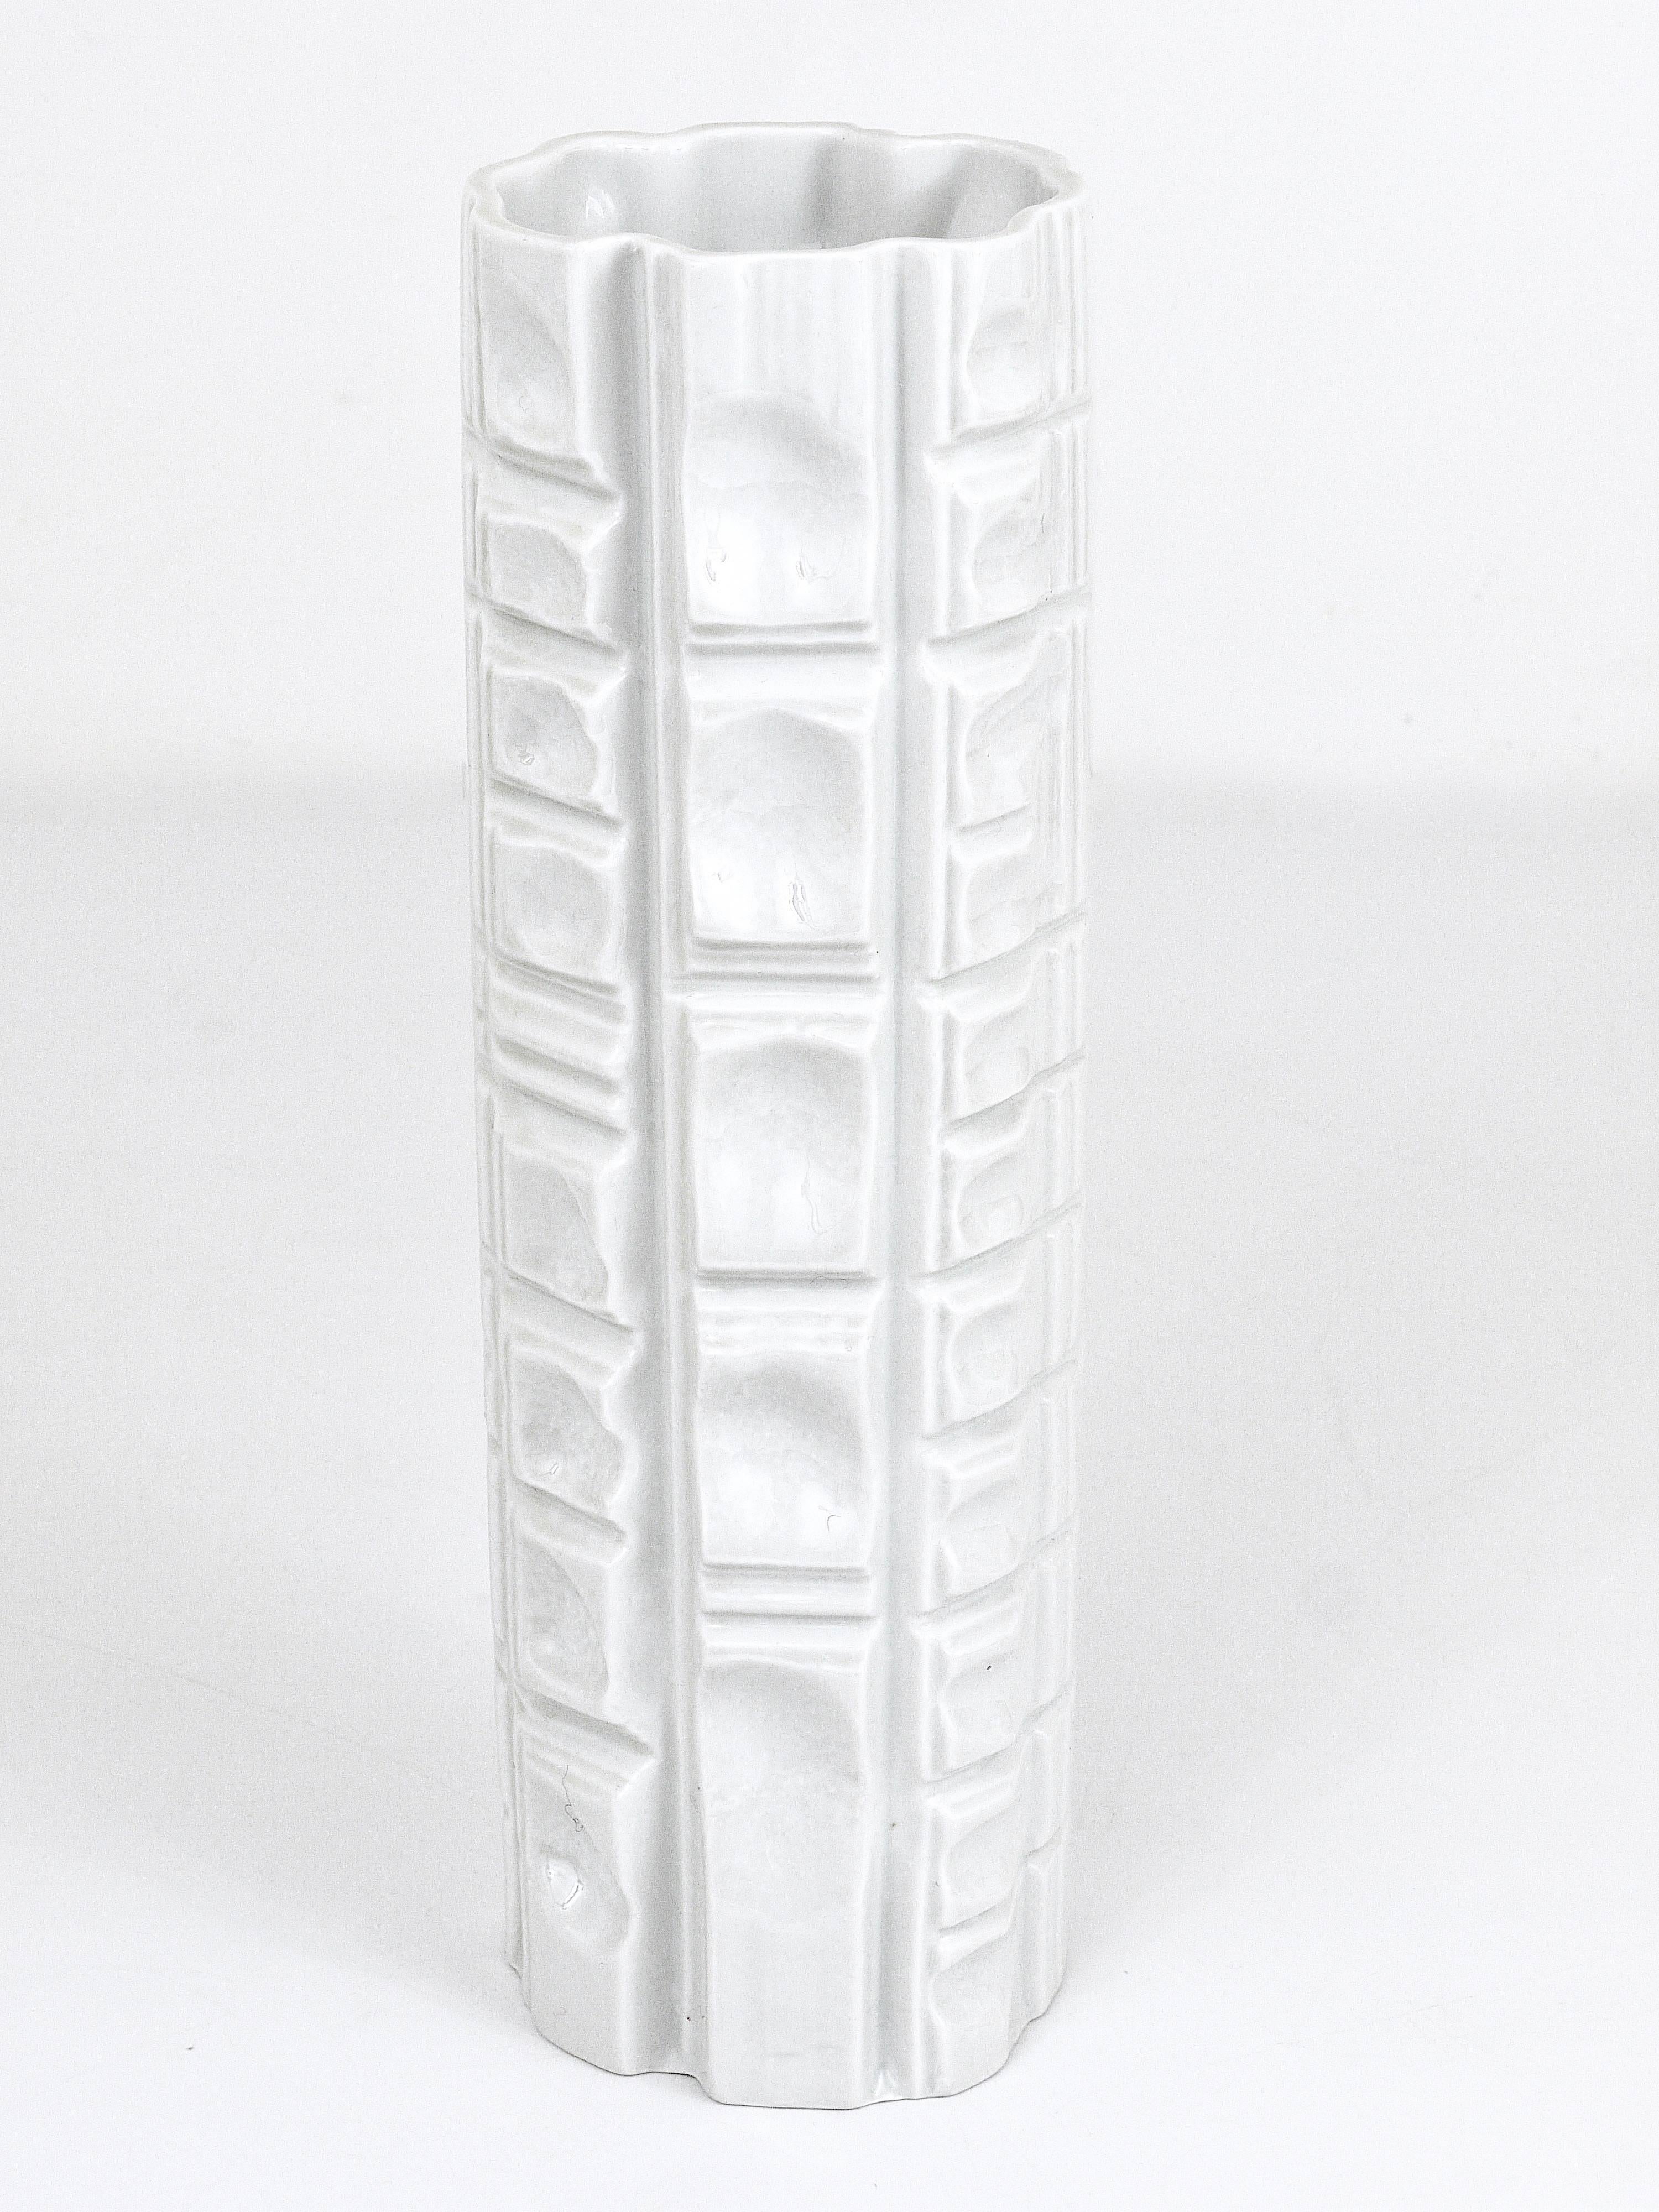 Rosenthal Germany Op Art Huge White Relief Porcelain Vase, 1960s For Sale 3